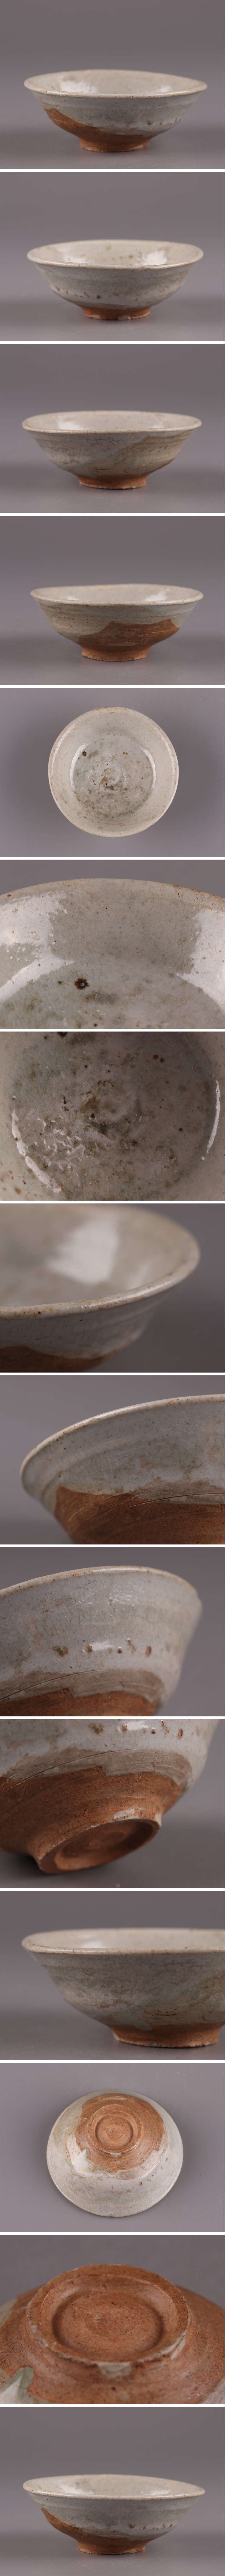 日本正本古美術 朝鮮古陶磁器 李朝 茶碗 時代物 極上品 初だし品 4247 李朝